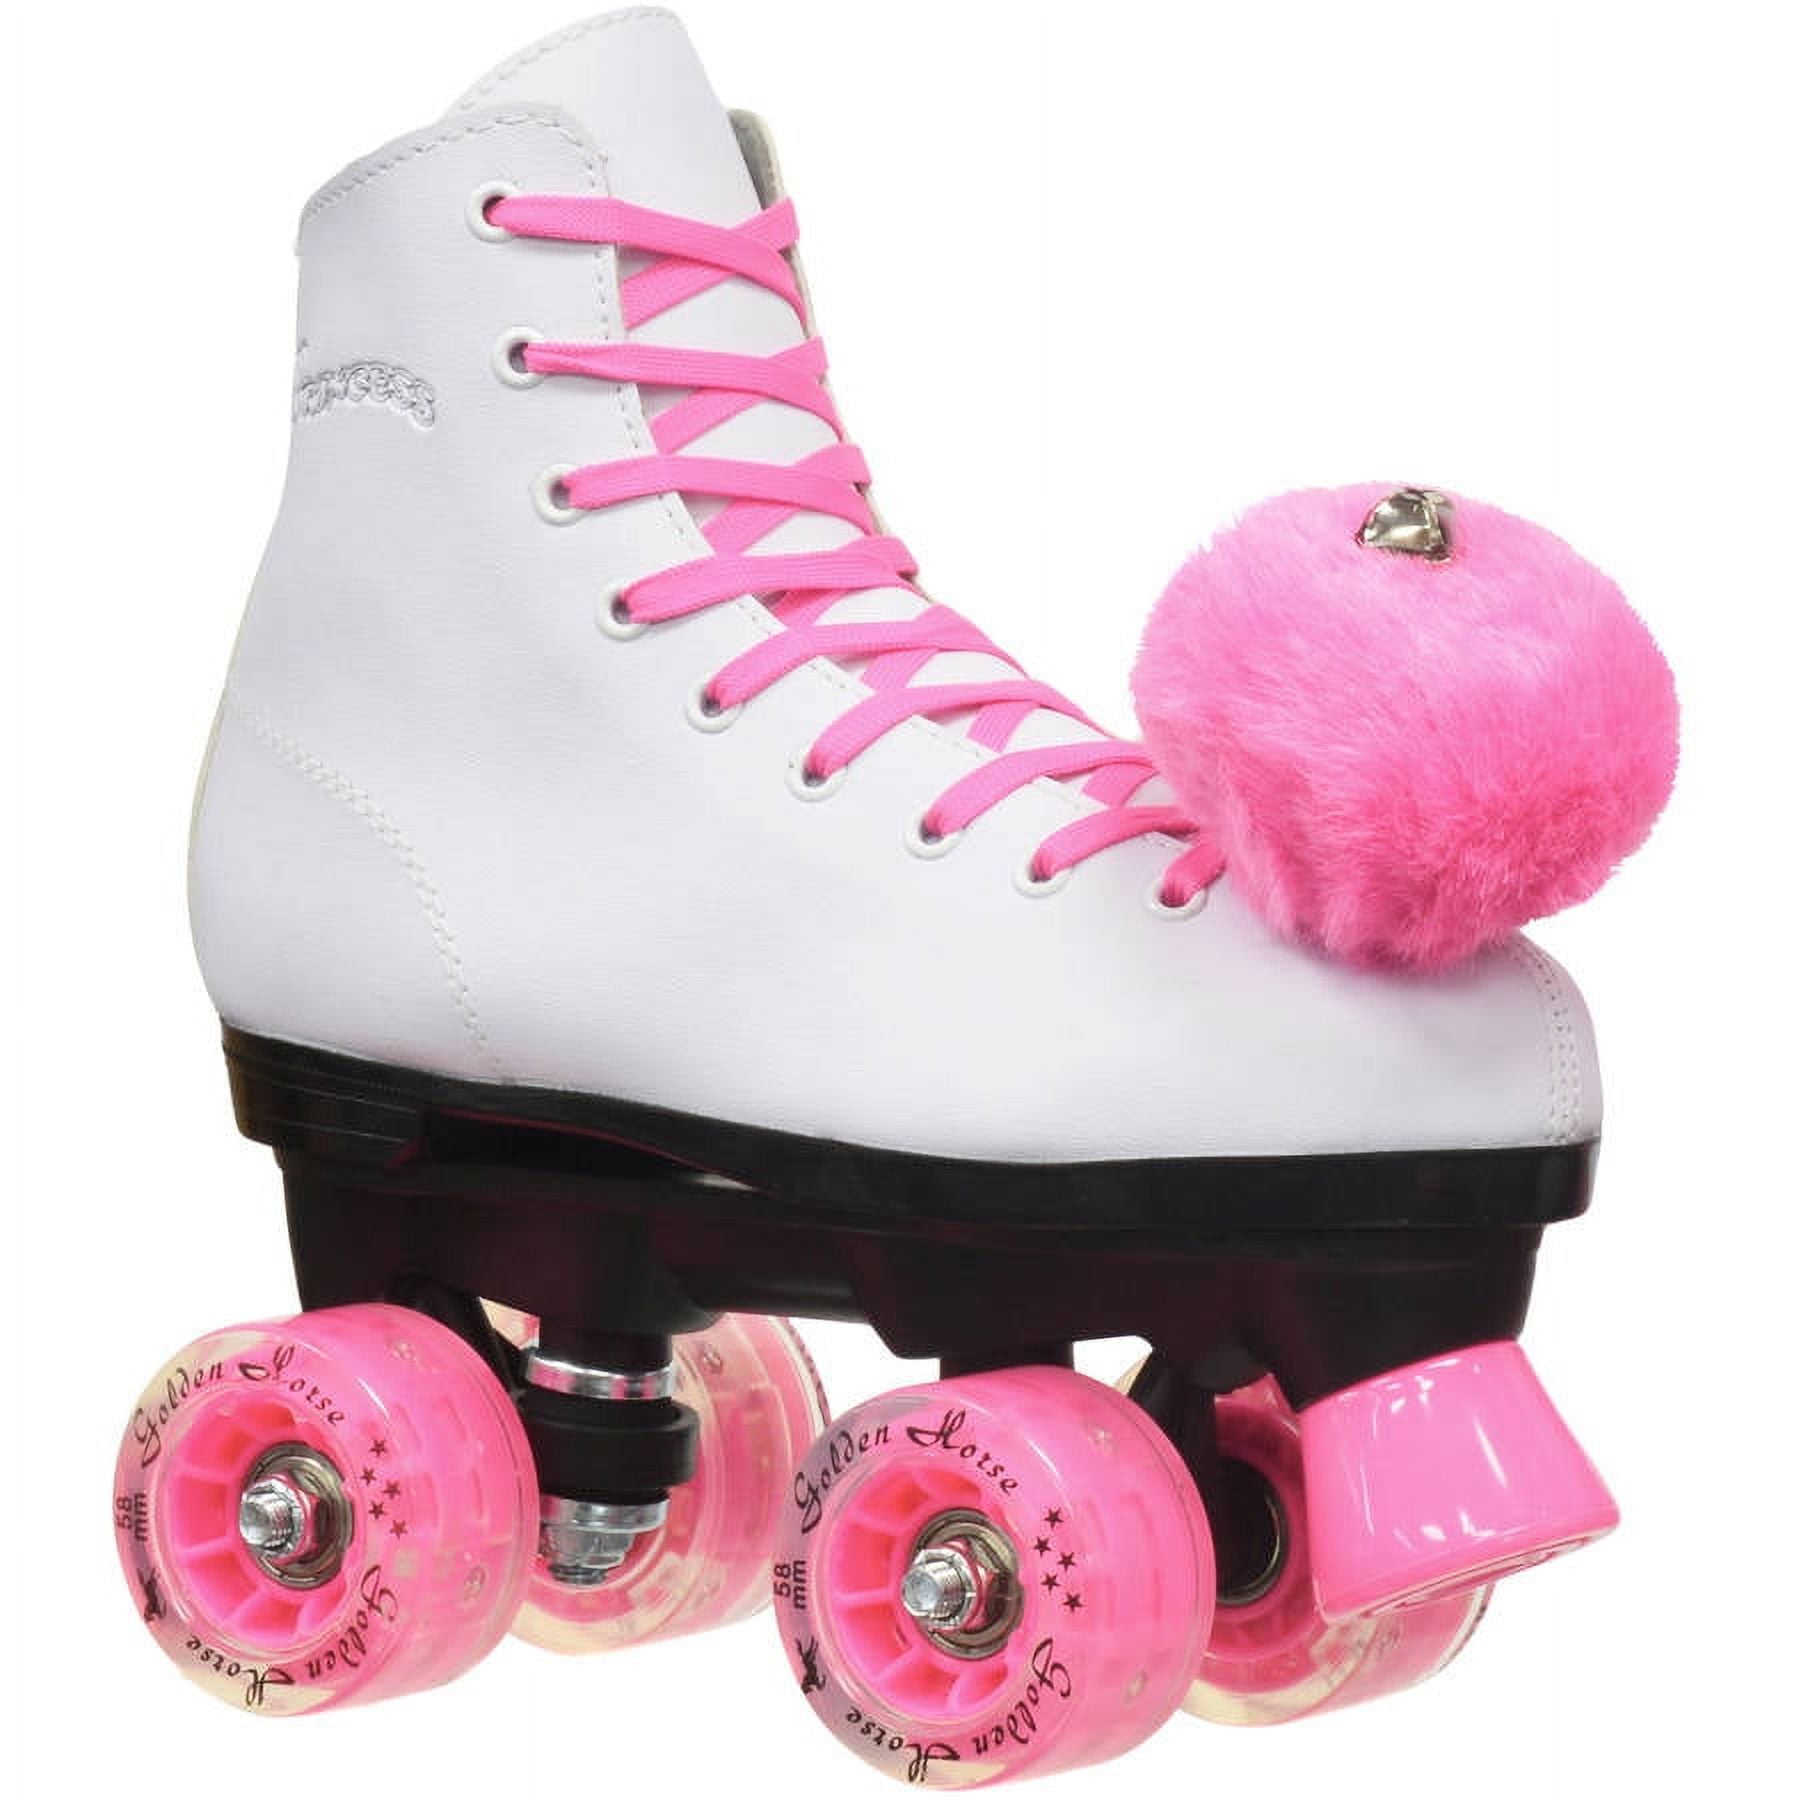 Epic Princess Youth Quad Roller Skates - Pink 1